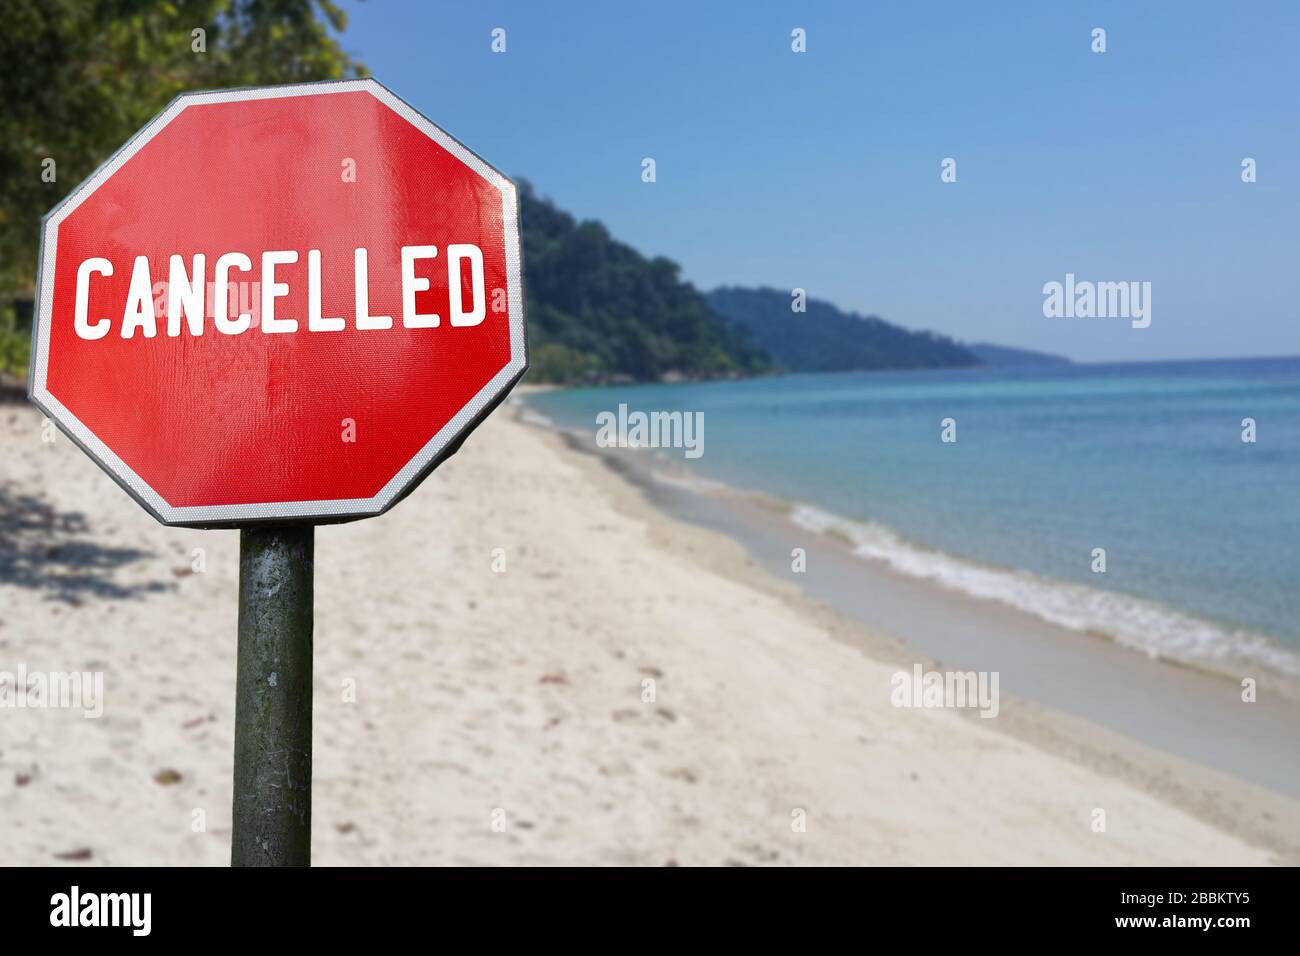 Rot stornierte Schilder auf Strandhintergrund. COVID-19-Pandemie-Quarantäne. Urlaub, Reisen, Urlaubspläne wegen Corona-Virus storniert. Stockfoto